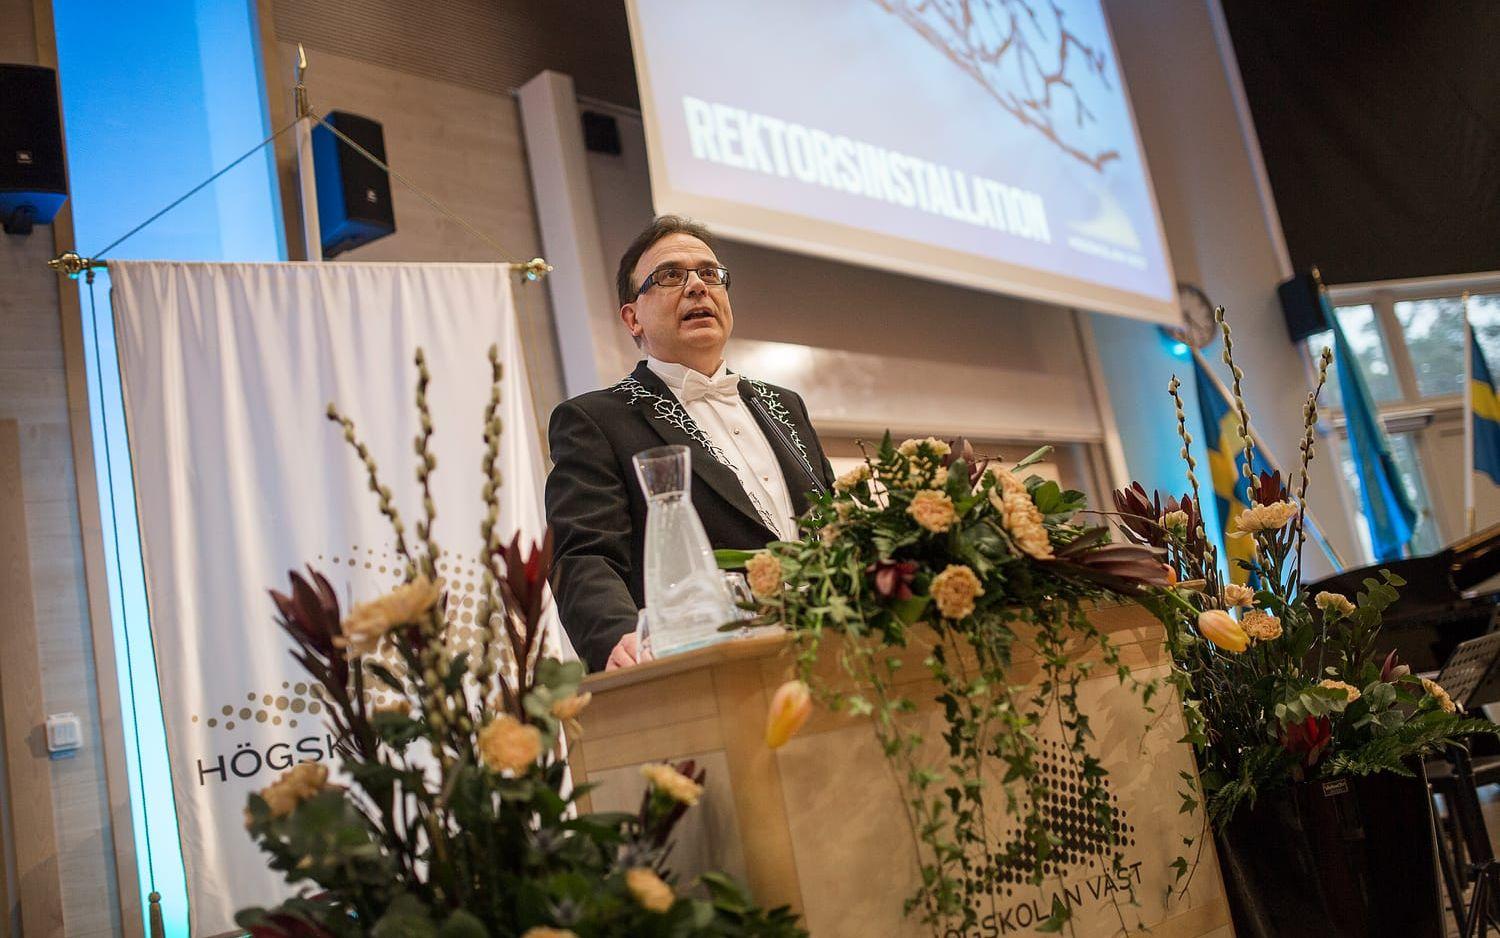 Högskolan Västs nya rektor Martin Hellström höll tal vid installationen, där han framhöll vikten av ett lärosäte som arbetar för öppenhet och tillgänglighet. Bilder: Andreas Olsson